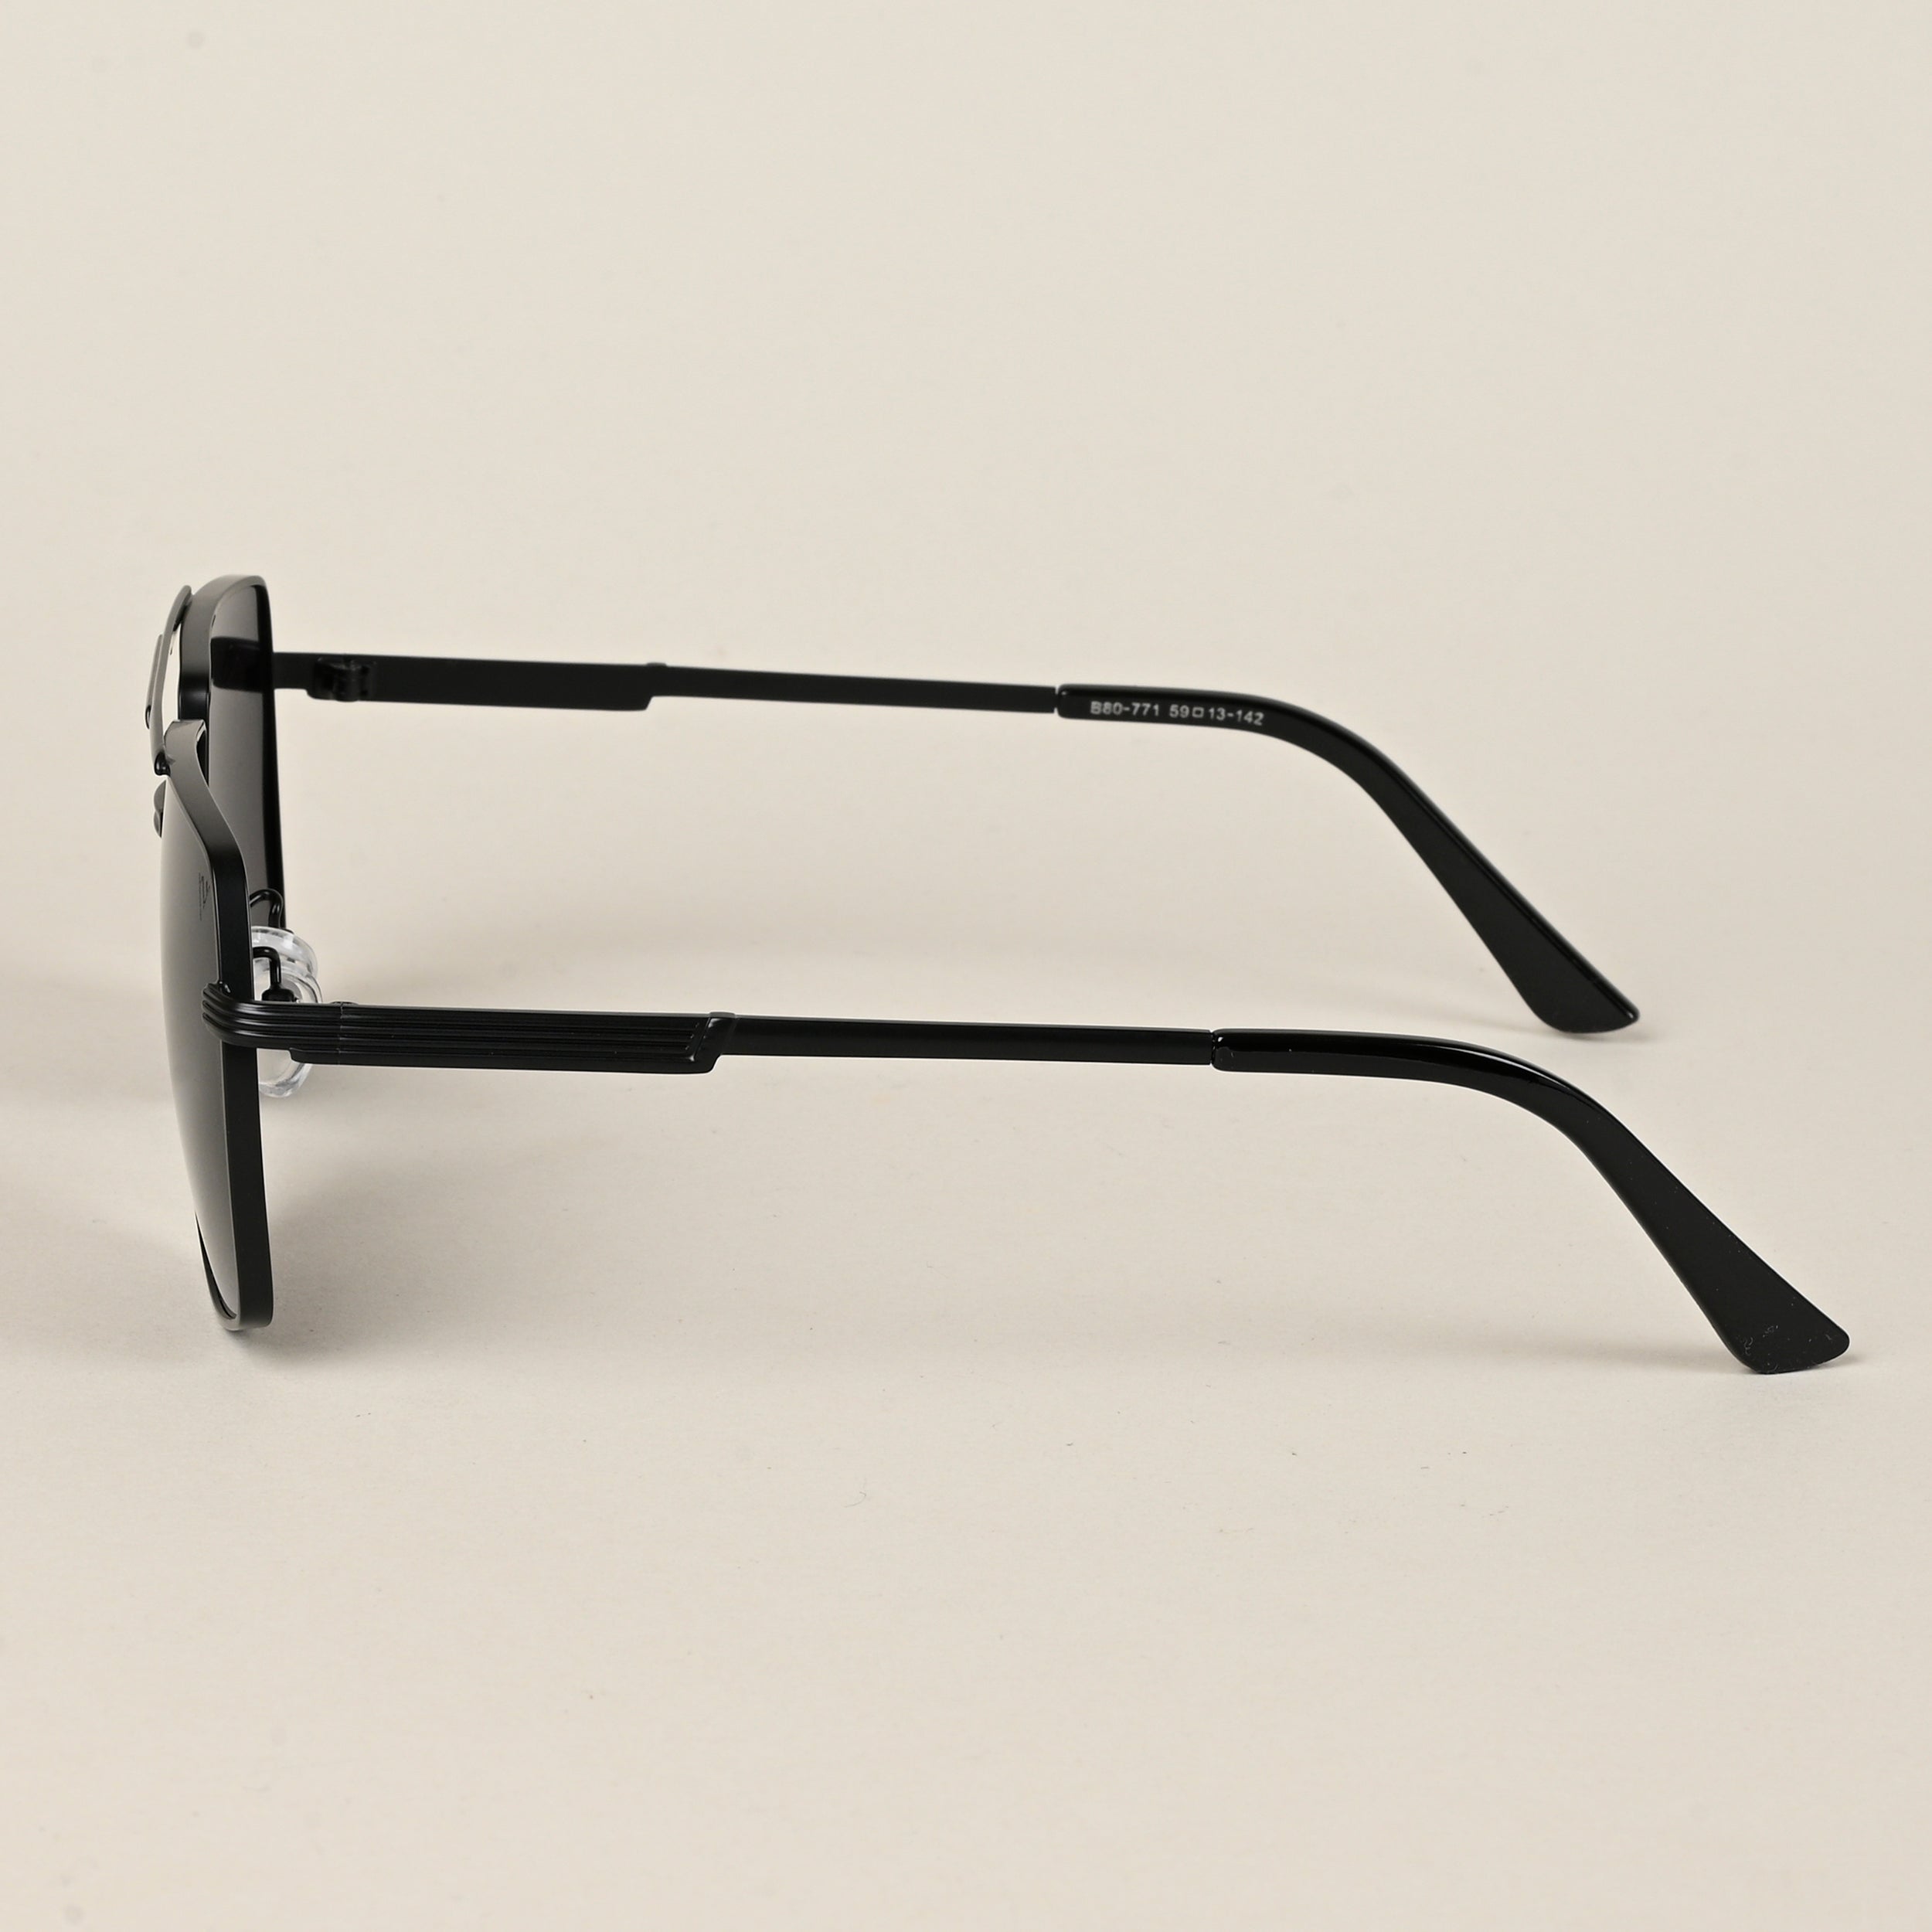 Voyage Aviator Sunglasses for Men & Women (Black Lens | Black Frame  - MG5200)